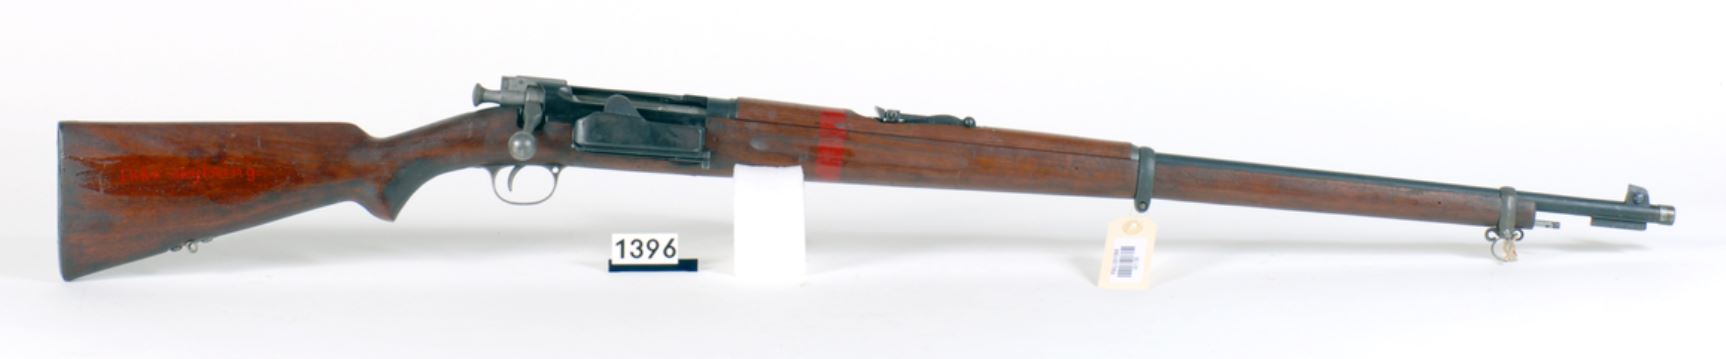 ./guns/rifle/bilder/Rifle-Kongsberg-Krag-M1894-instruksjon-hel-2-1.JPG